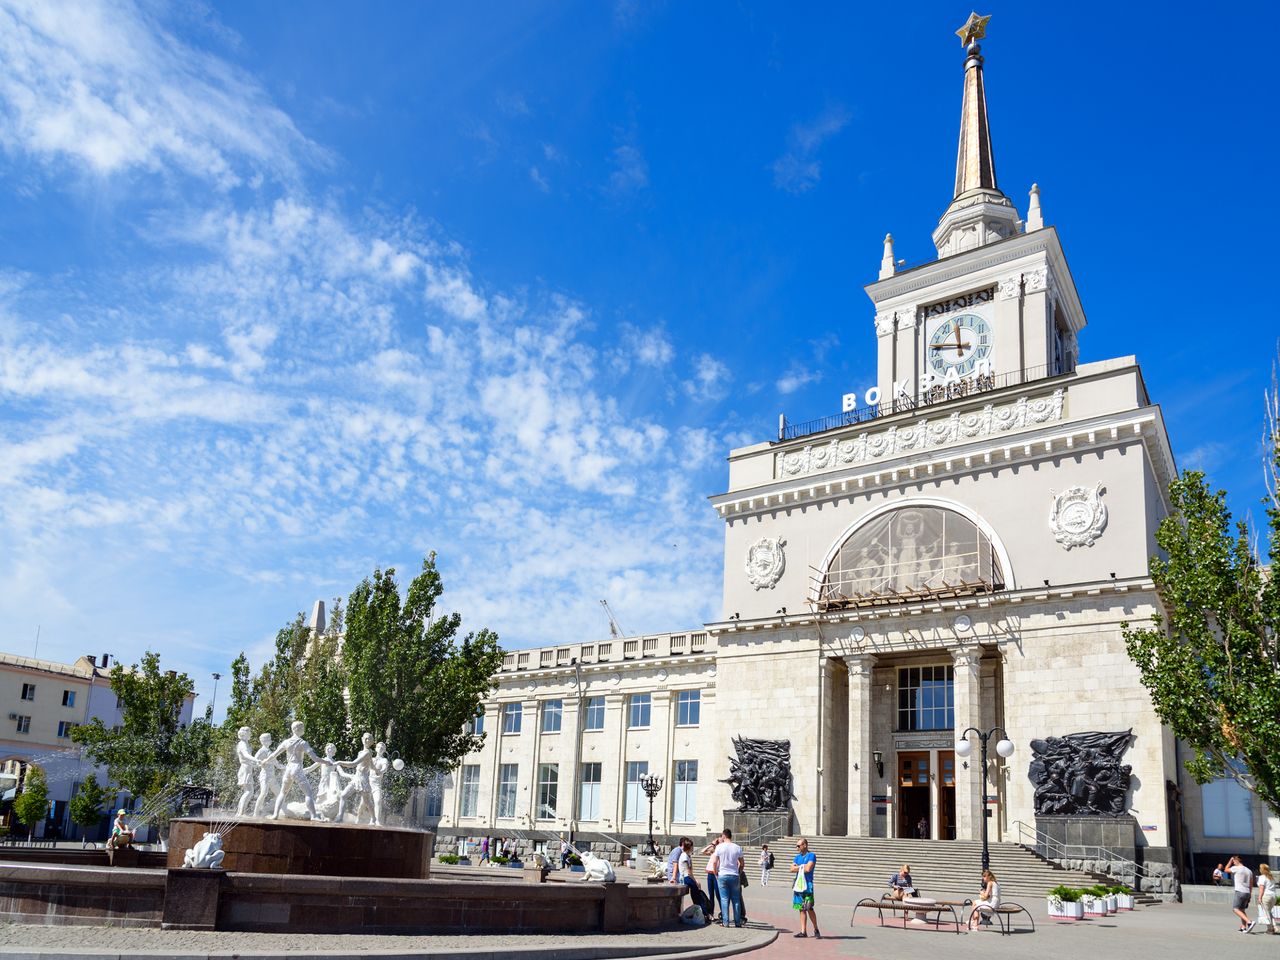 Обзорный променад по центру Волгограда | Цена 4500₽, отзывы, описание экскурсии